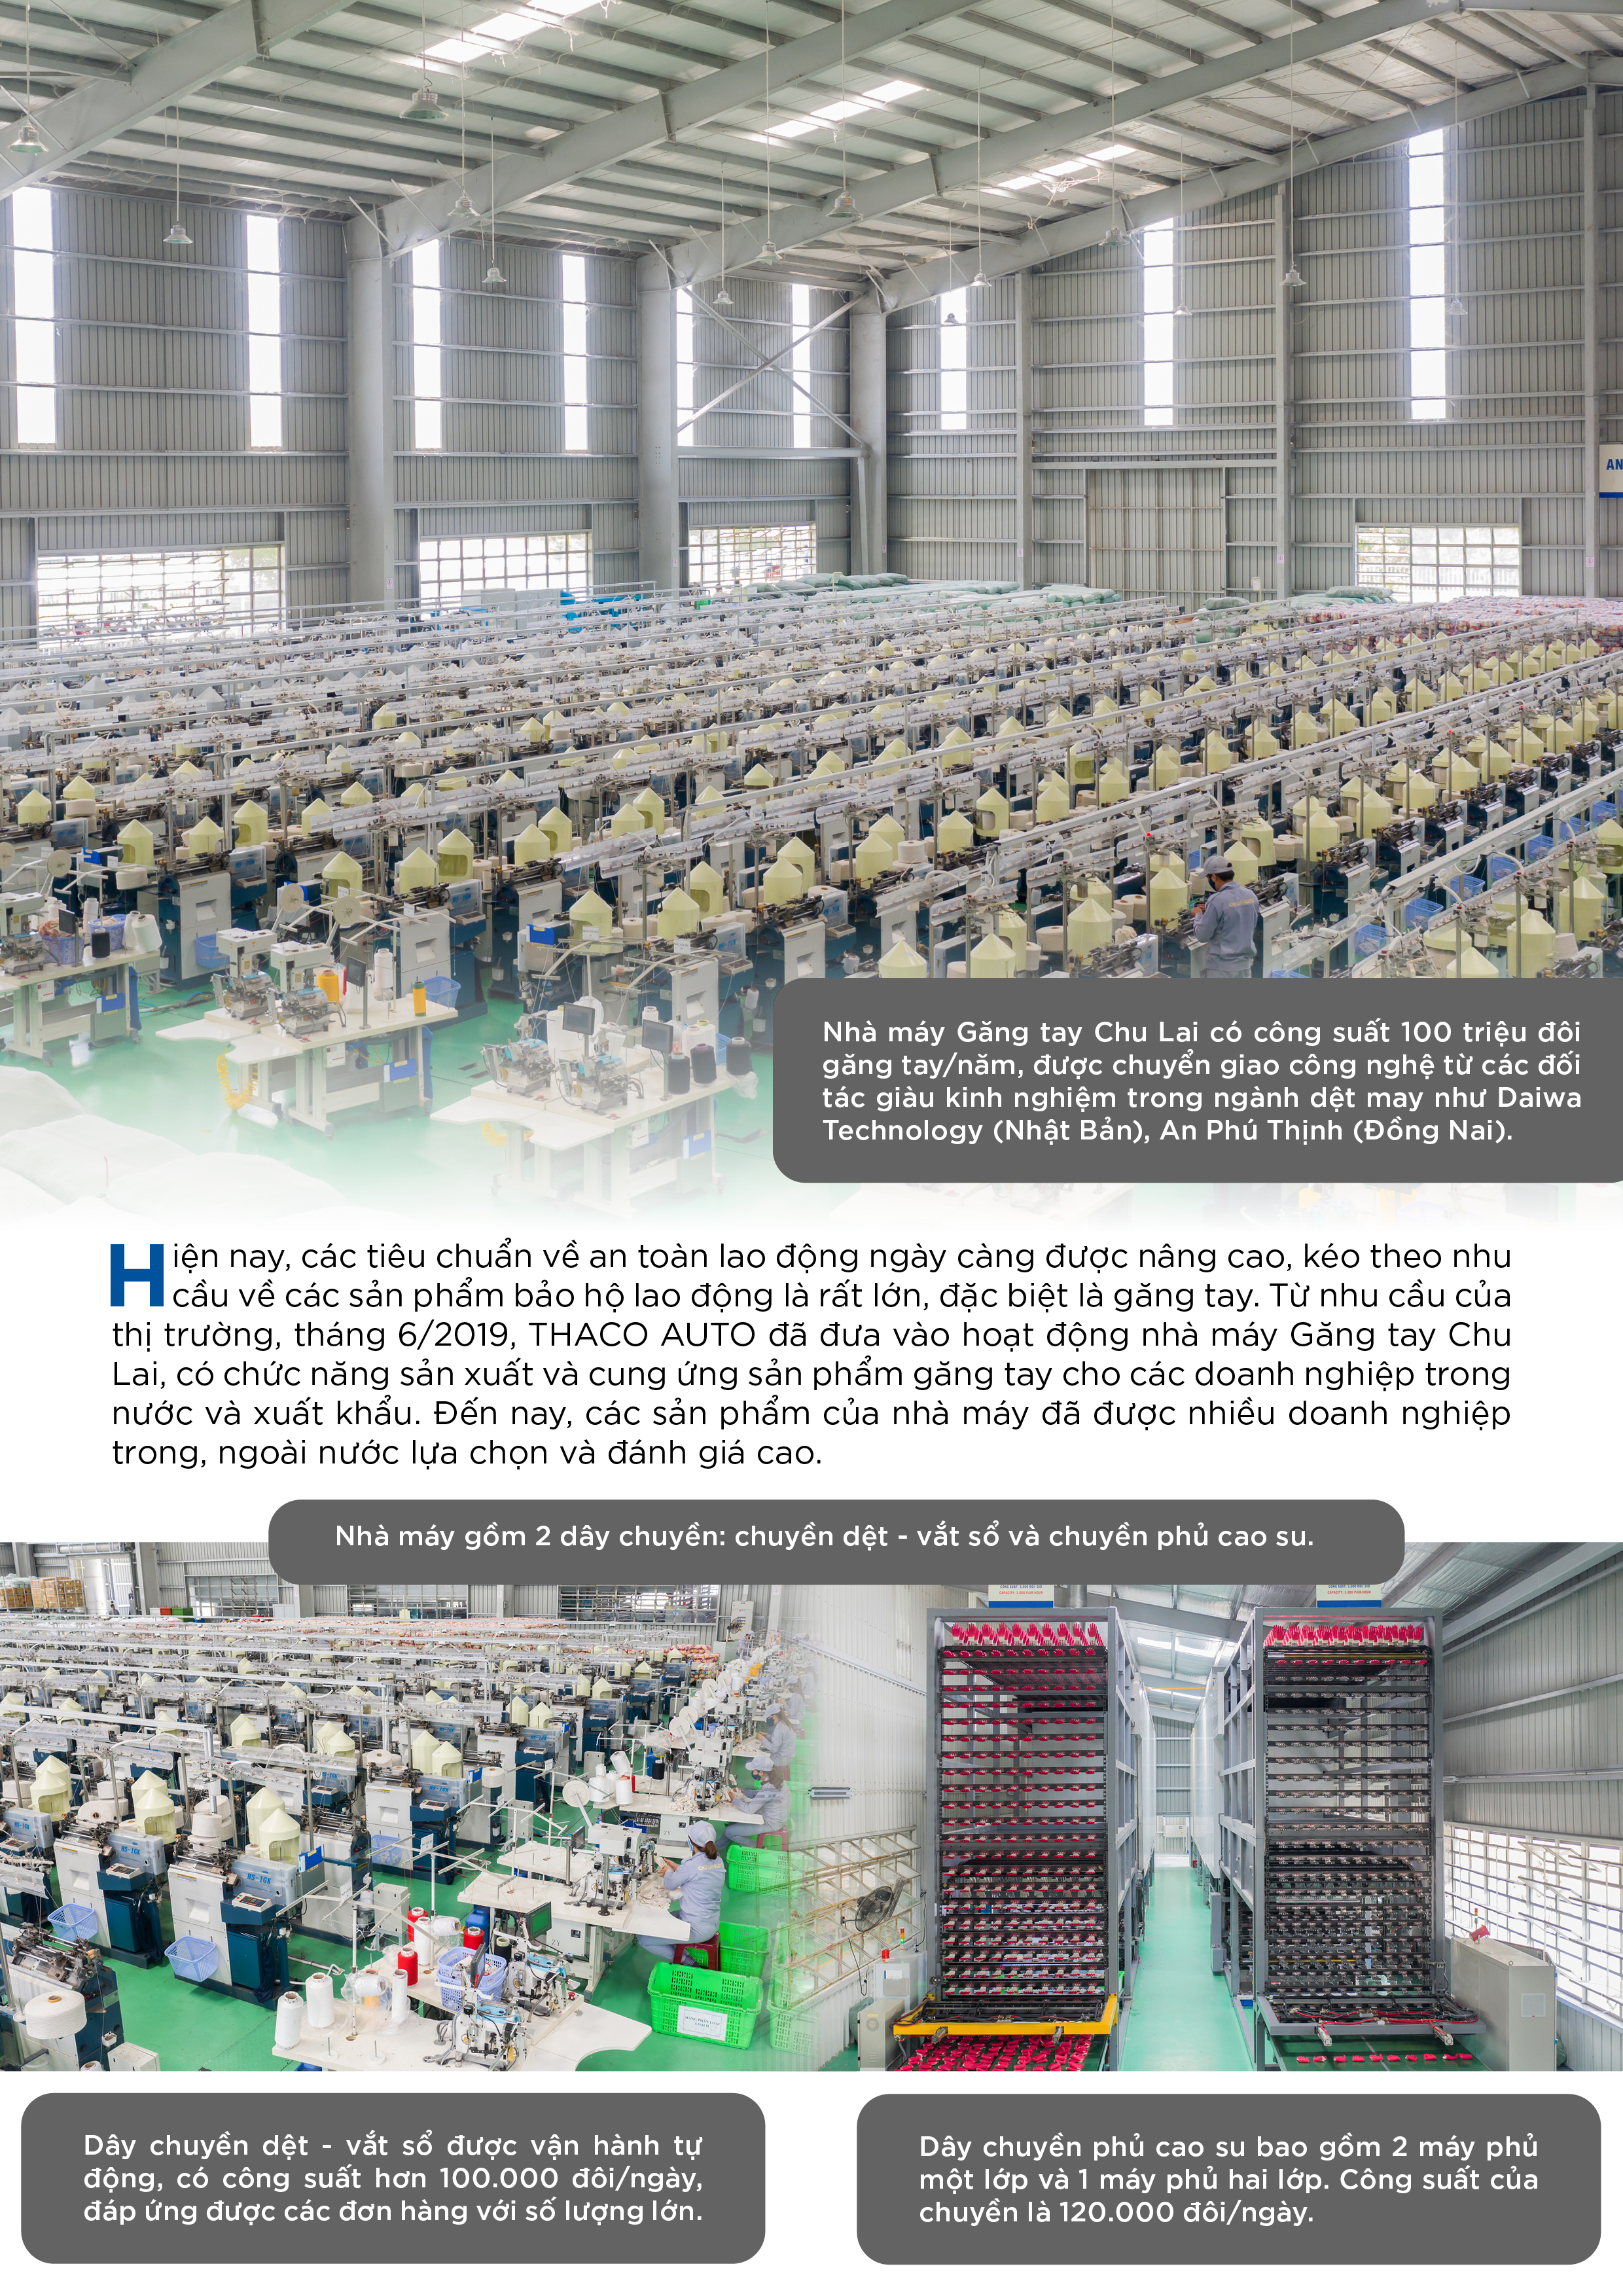 Nhà máy găng tay Chu Lai - Đơn vị sản xuất găng tay hàng đầu miền Trung